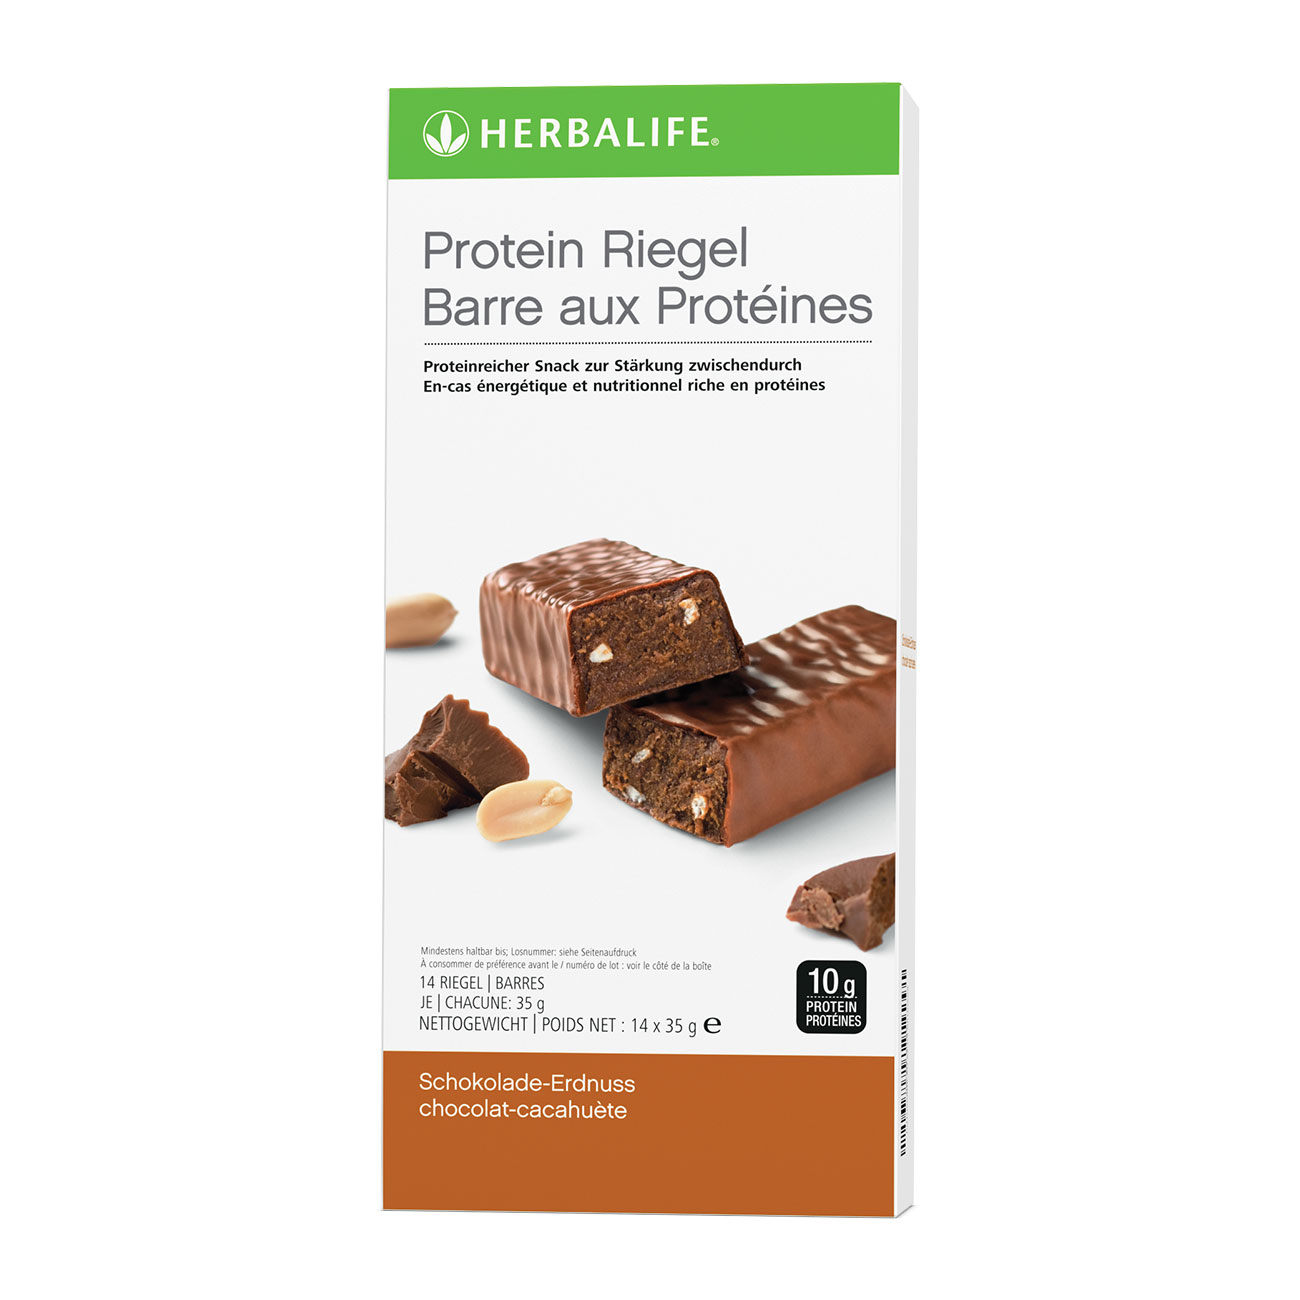 Barres aux proteines Chocolat Cacahuete   des barres proteinees pour un delicieux encas minceur. 10g de proteines dans chaque barre. 140 kcal par barre.